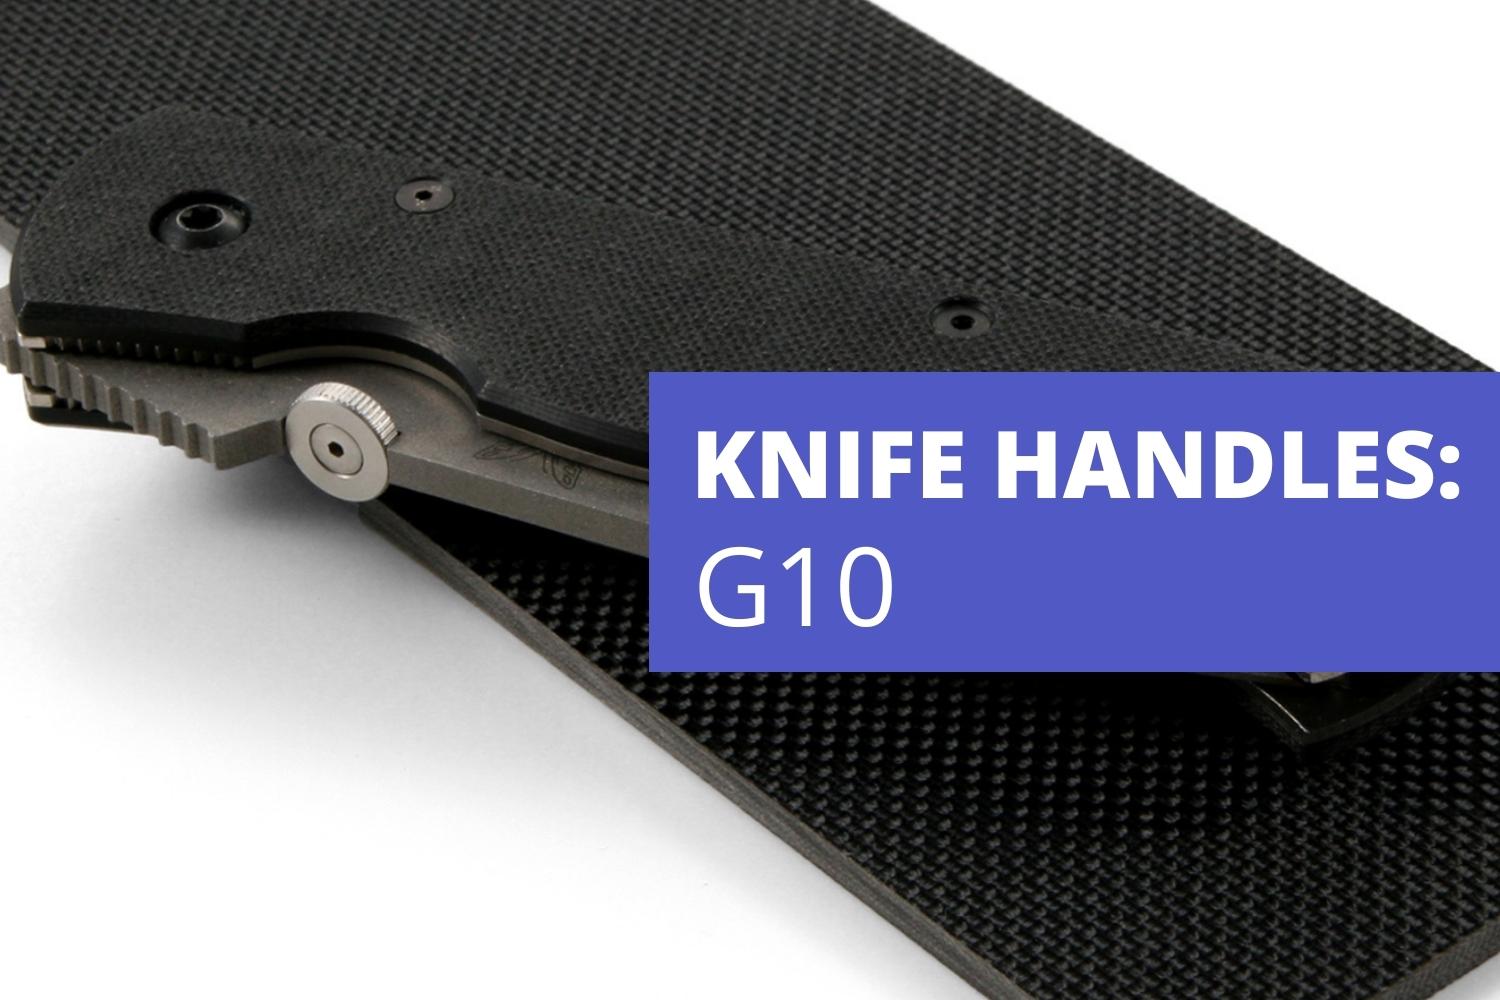 http://www.koiknives.com/cdn/shop/articles/KITCHEN-KNIFE-HANDLE-MATERIALS-G10.jpg?v=1659750988